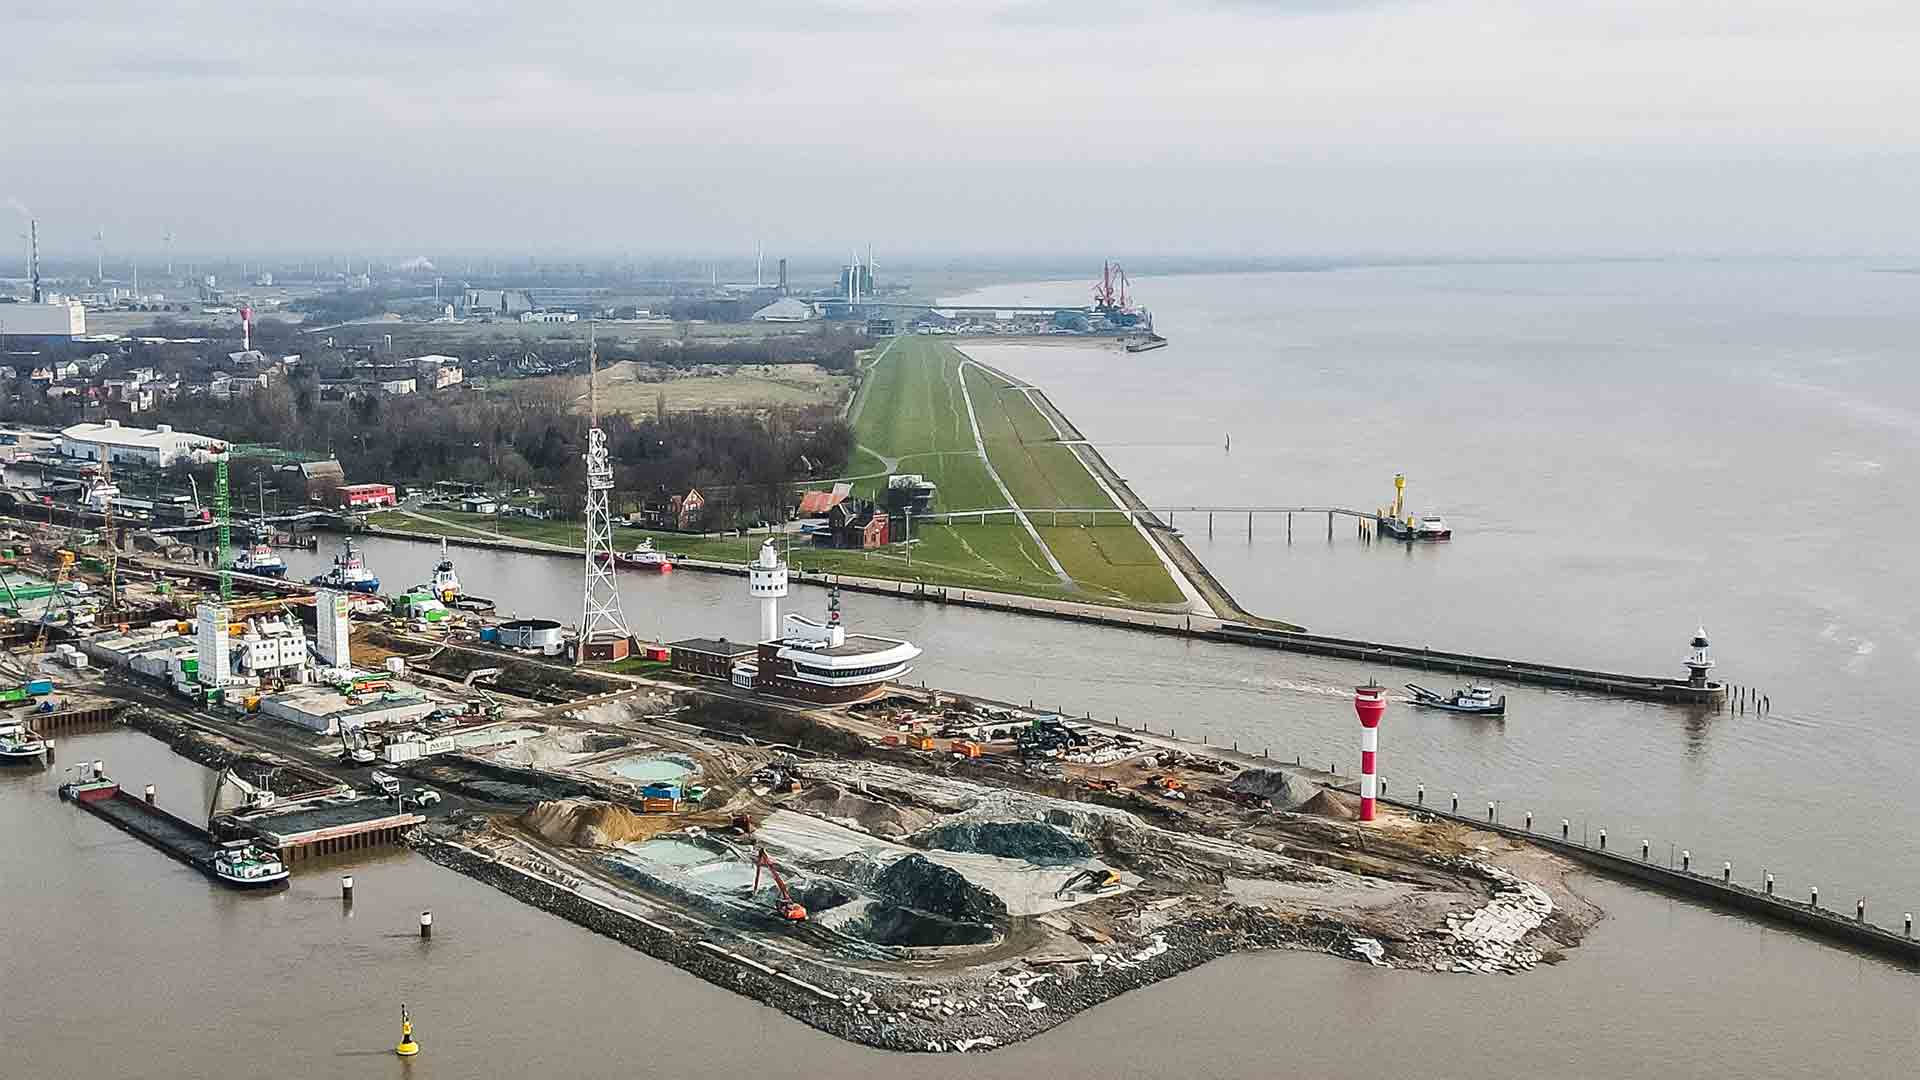 Möglicher Standort für LNG-Terminal Hafen Brunsbüttel | picture alliance/dpa